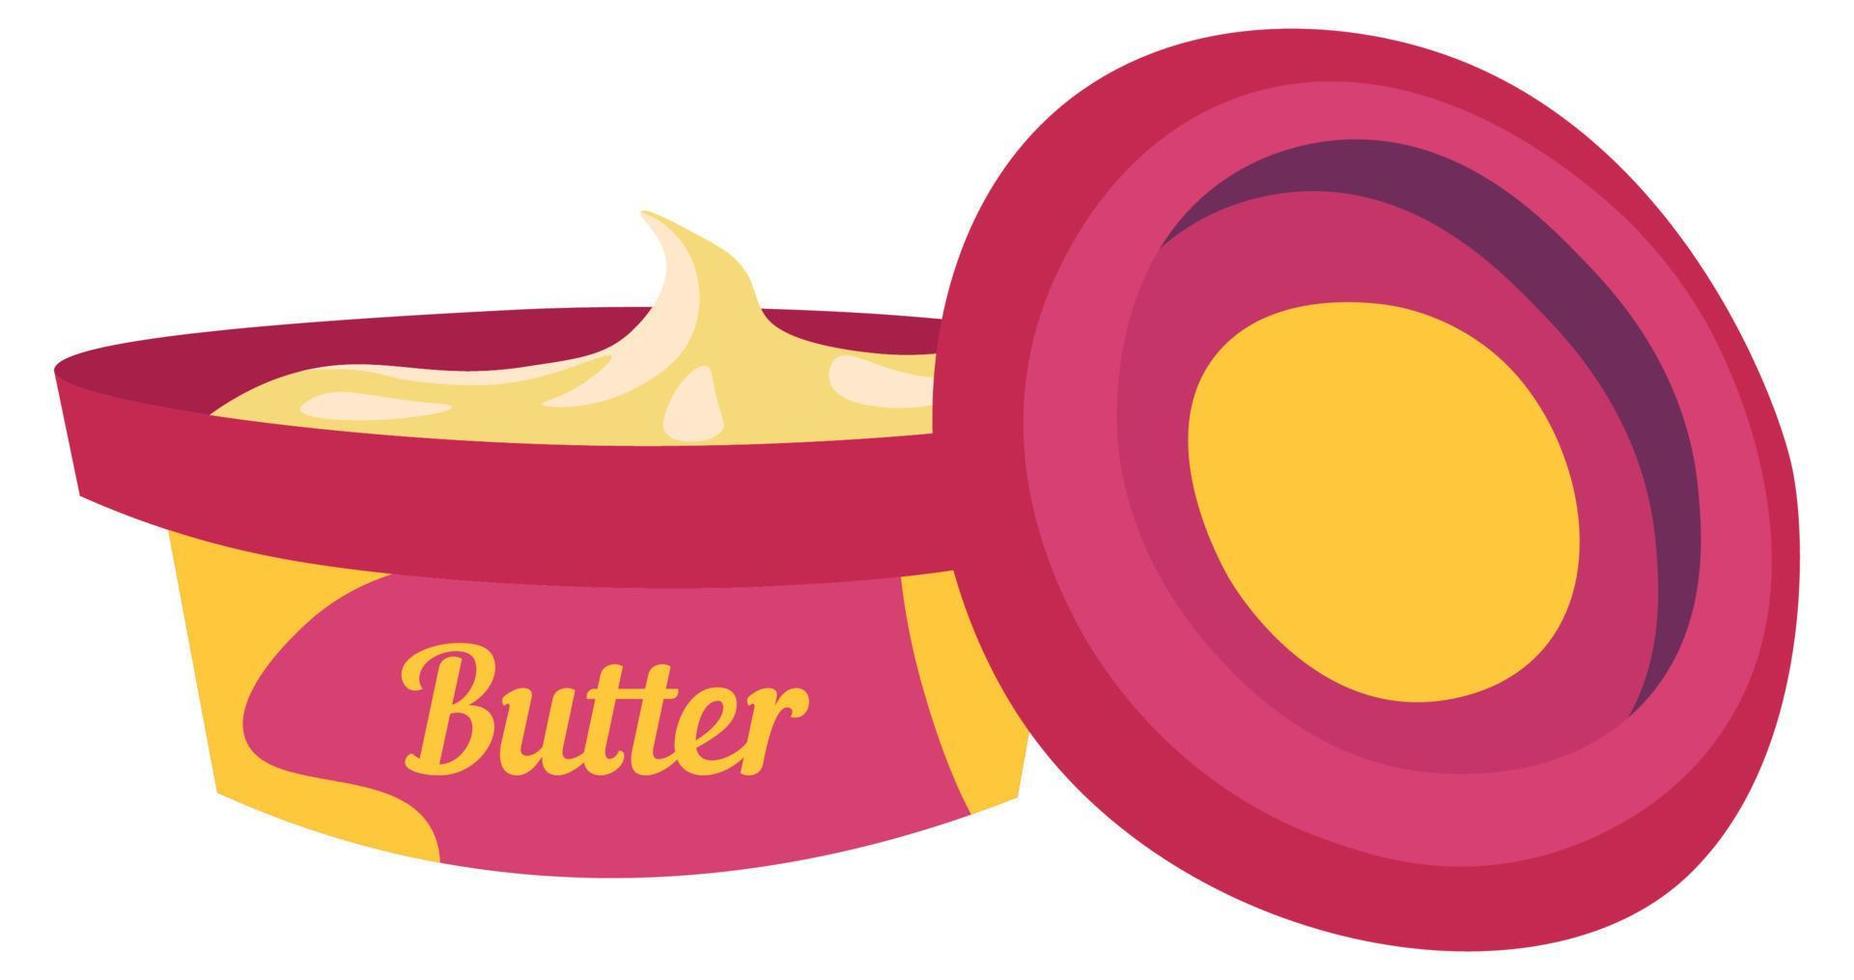 Buttercremepaket, Milchproduktlebensmittelvektor vektor